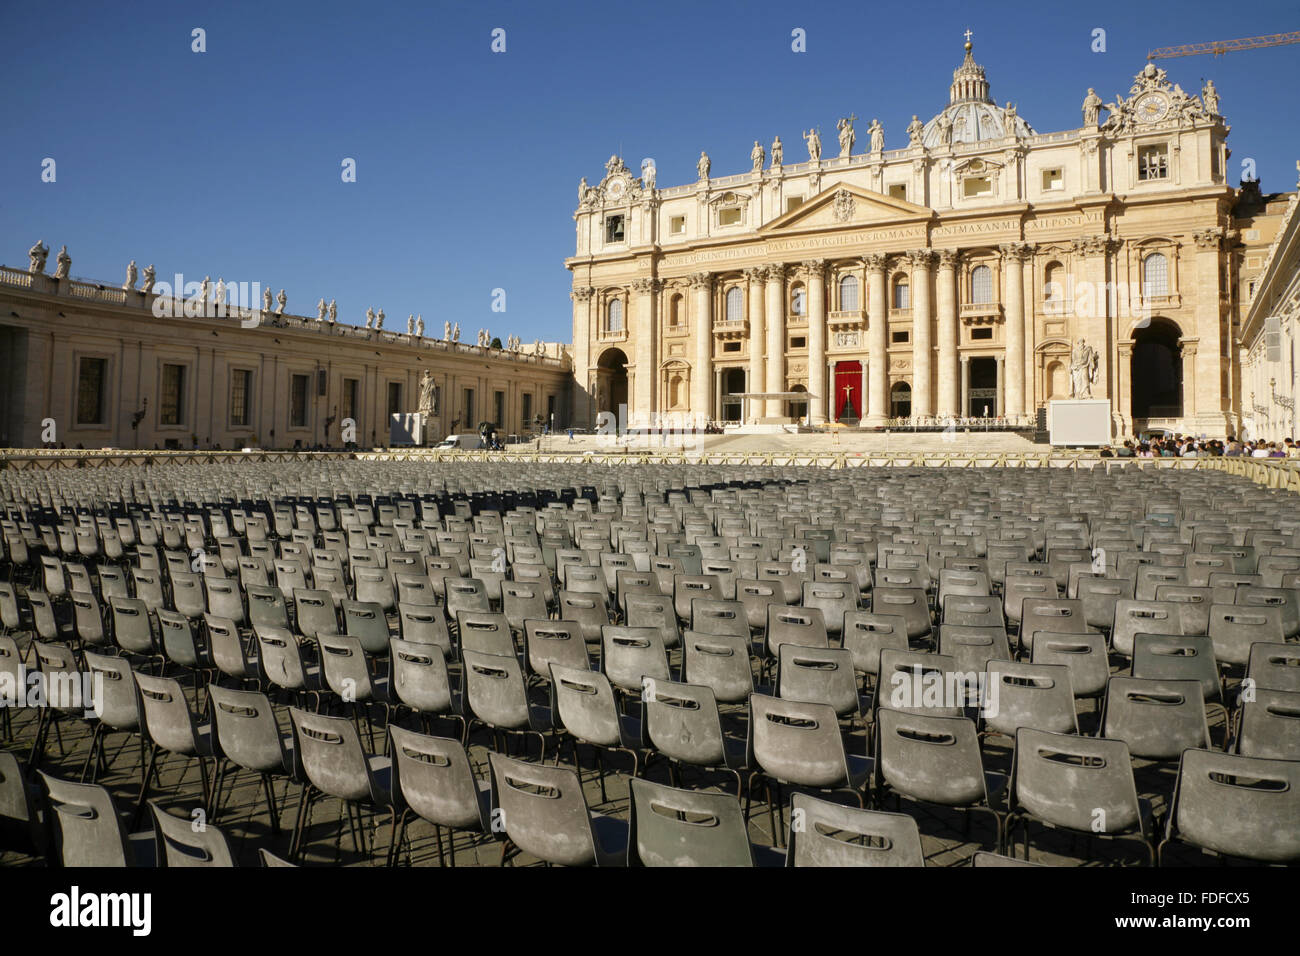 Leere Sitzplätze in der Piazza San Pietro vor der Basilica di San Pietro (St. Peter), Vatikanstadt, Rom, Italien. Stockfoto